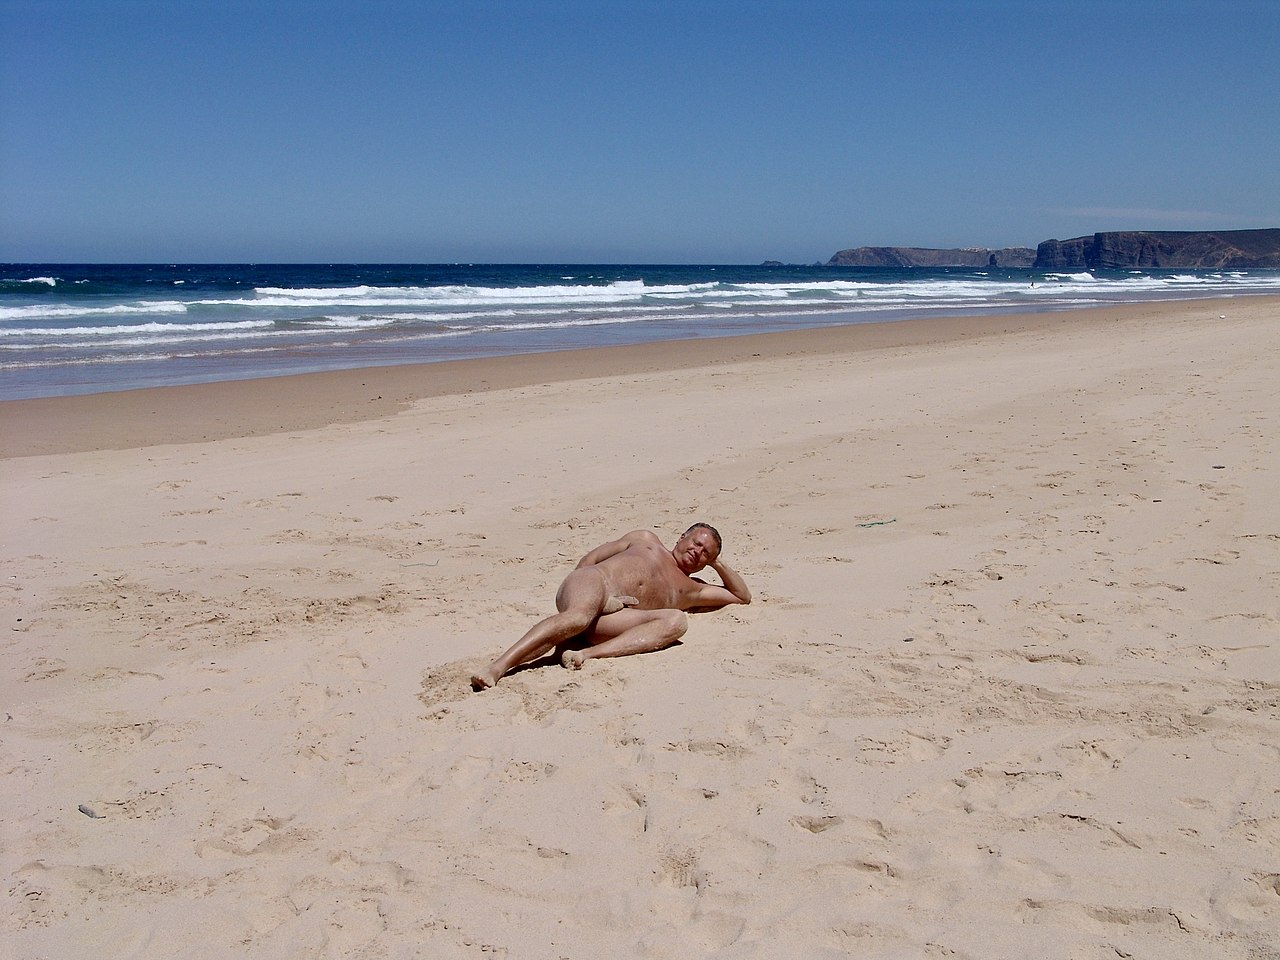 Nudists on the beach photos